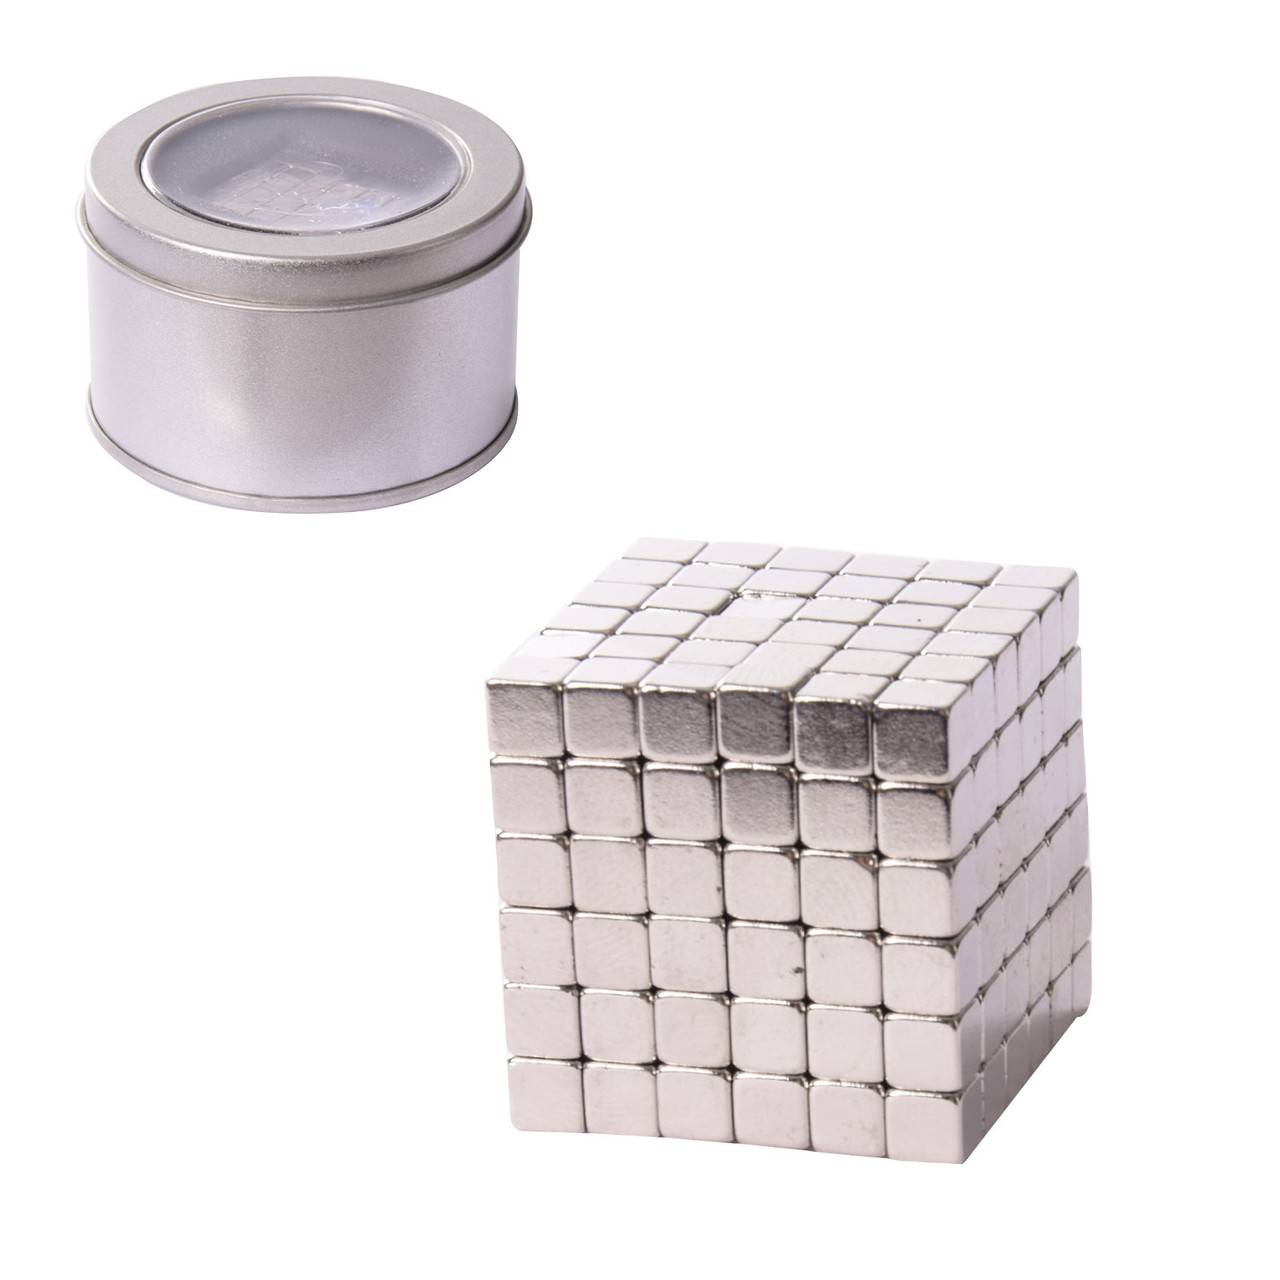 Магнітний конструктор неокуб NC2263 тетракуб, срібло, 216 деталей 5мм, в боксі, розчин упаковки – 6.5*6.5*4 см TZP163